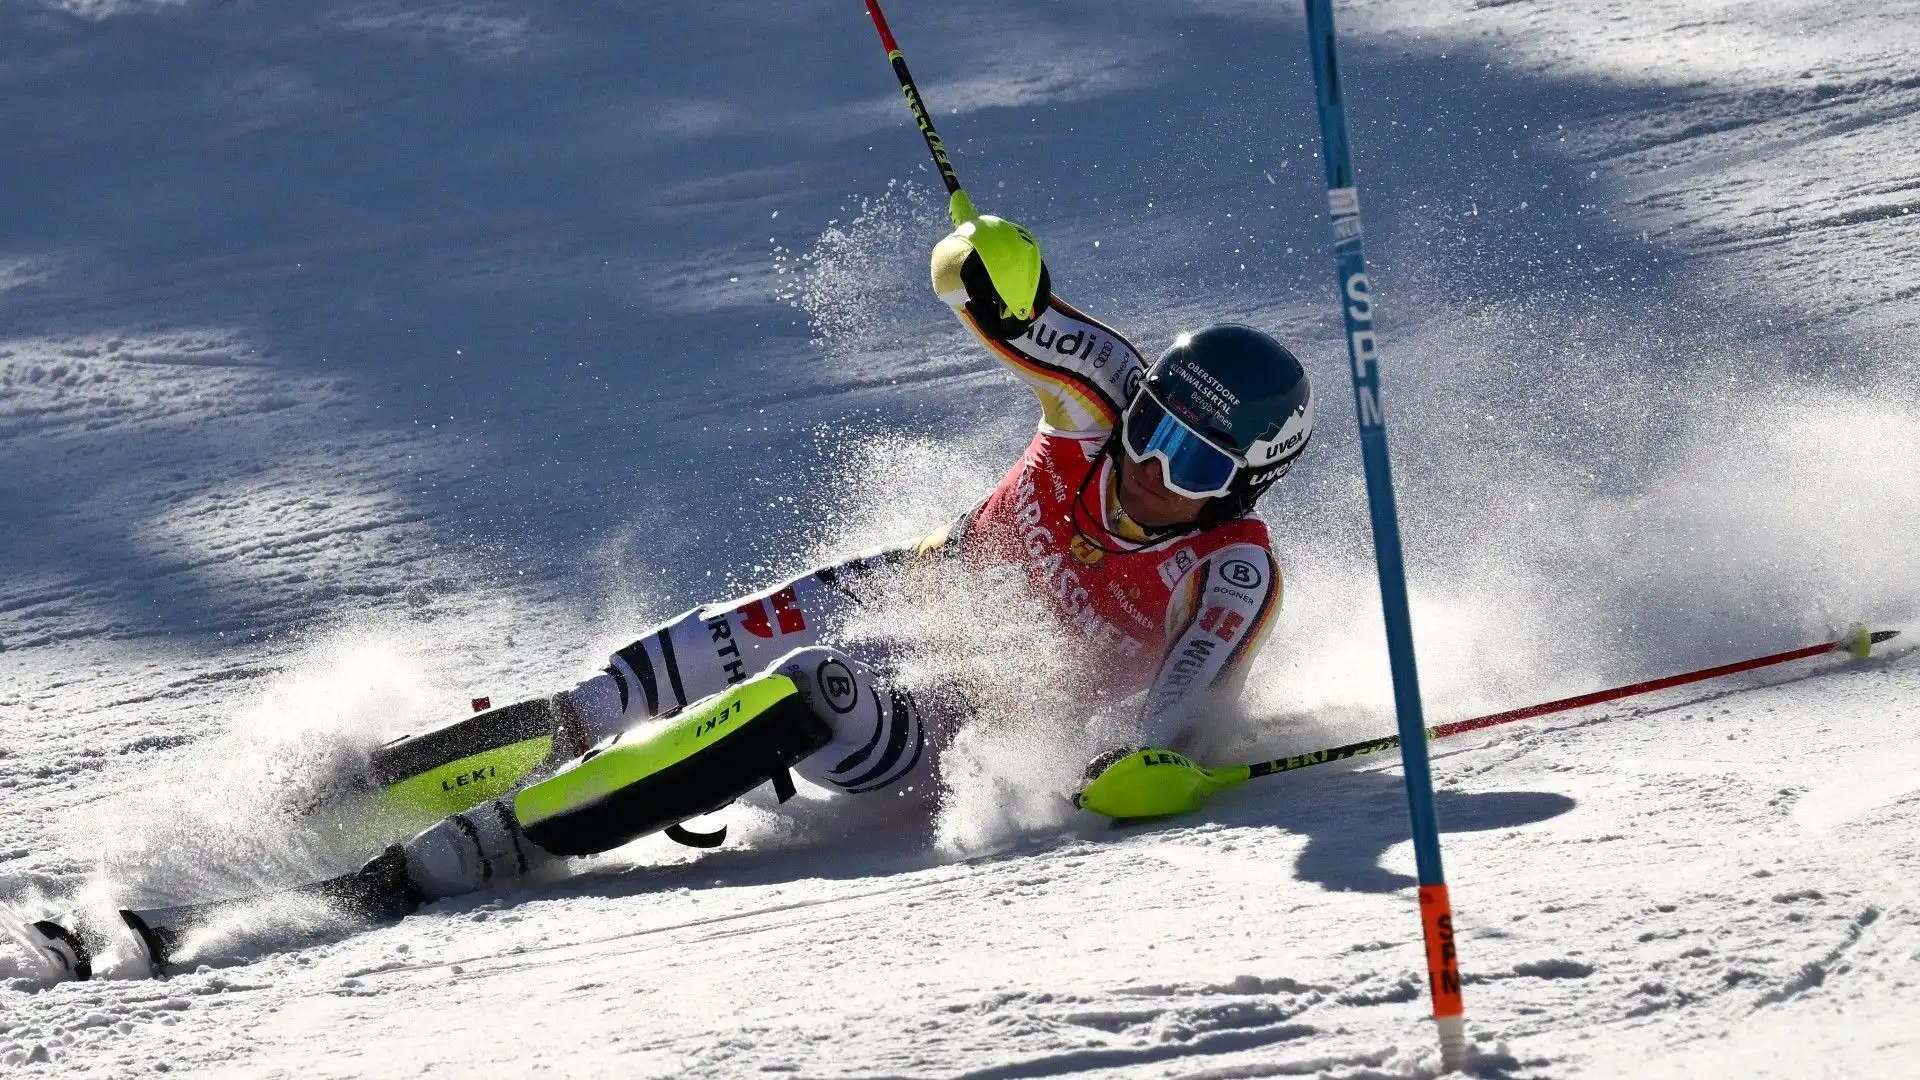 Lo sciatore tedesco ha perso l'equilibrio ed è finito sulla neve